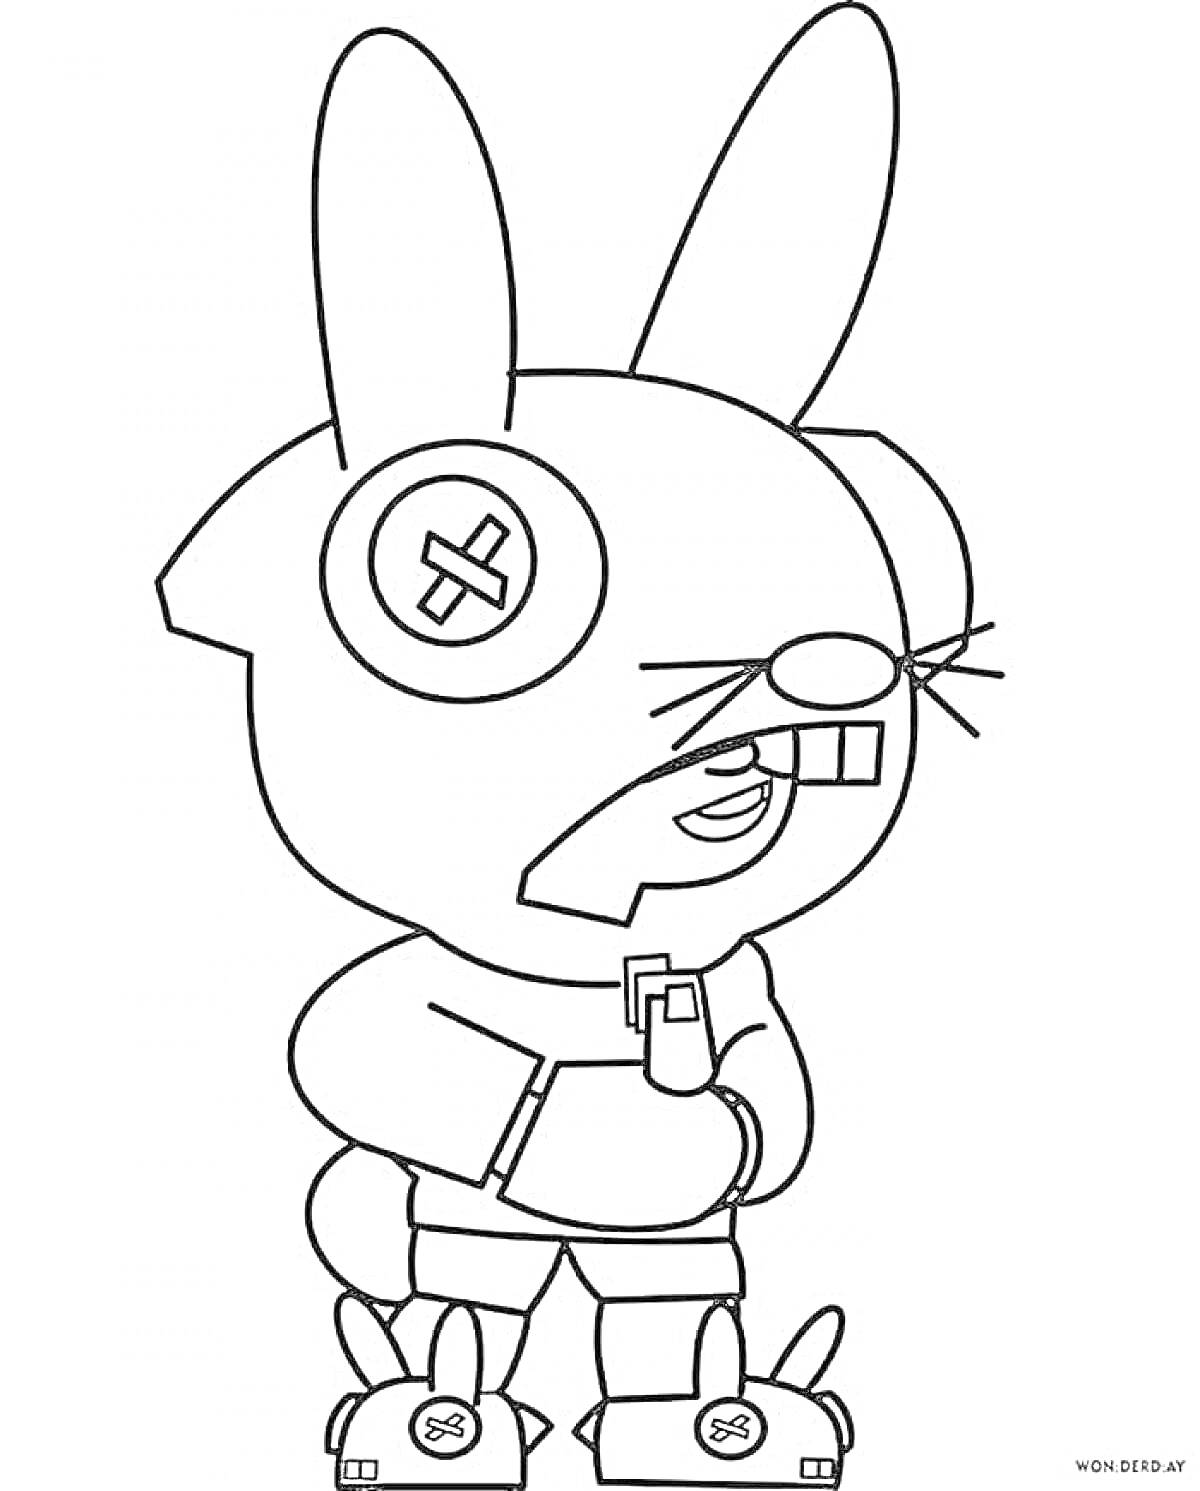 Раскраска Леон в костюме кролика из игры Brawl Stars с поднятым капюшоном, подбородочной повязкой, изображением креста на ушах, стоящий на одной ноге